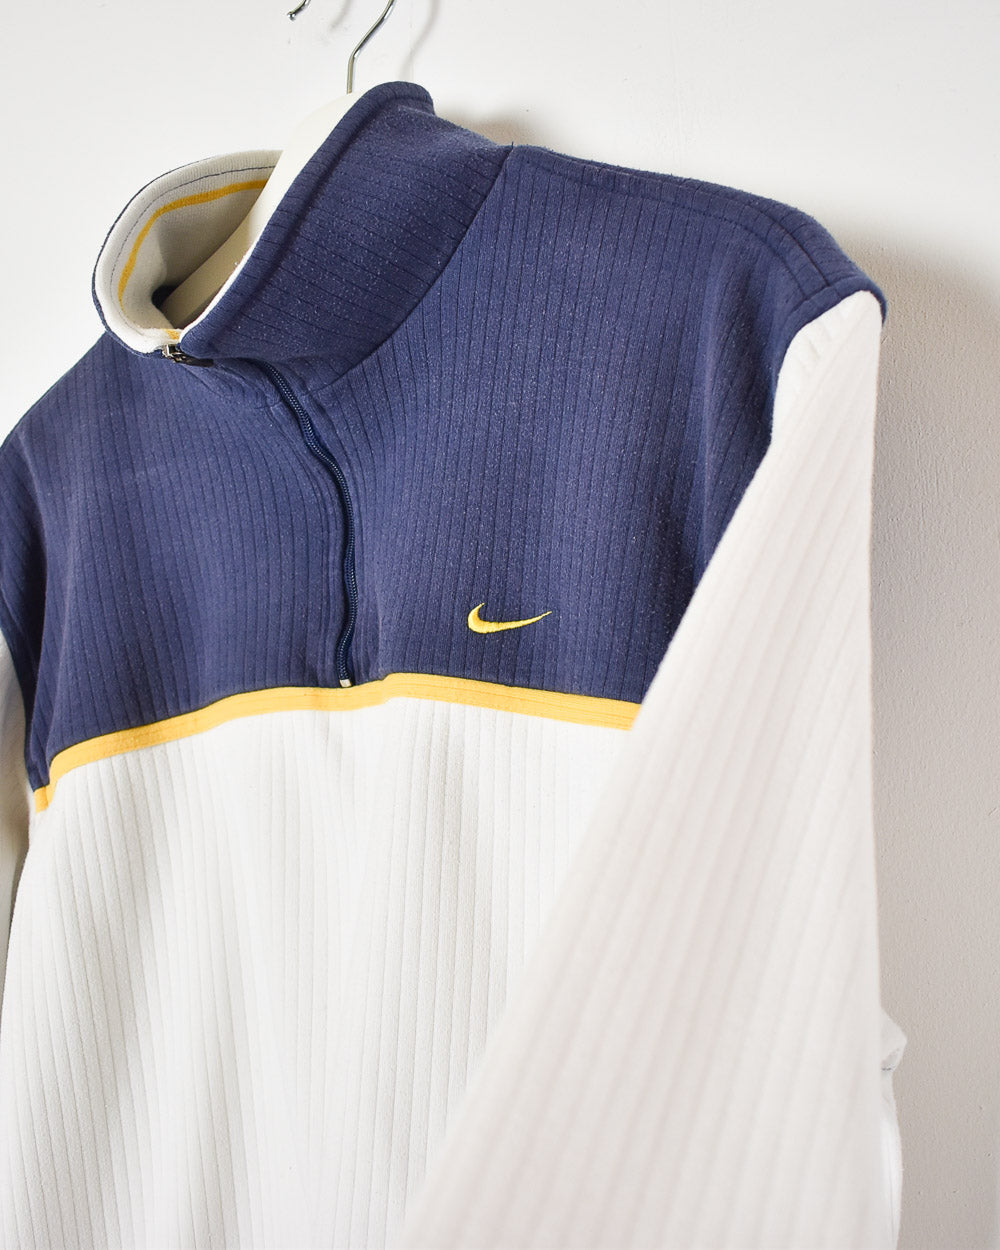 White Nike 1/4 Zip Women's Sweatshirt - Medium